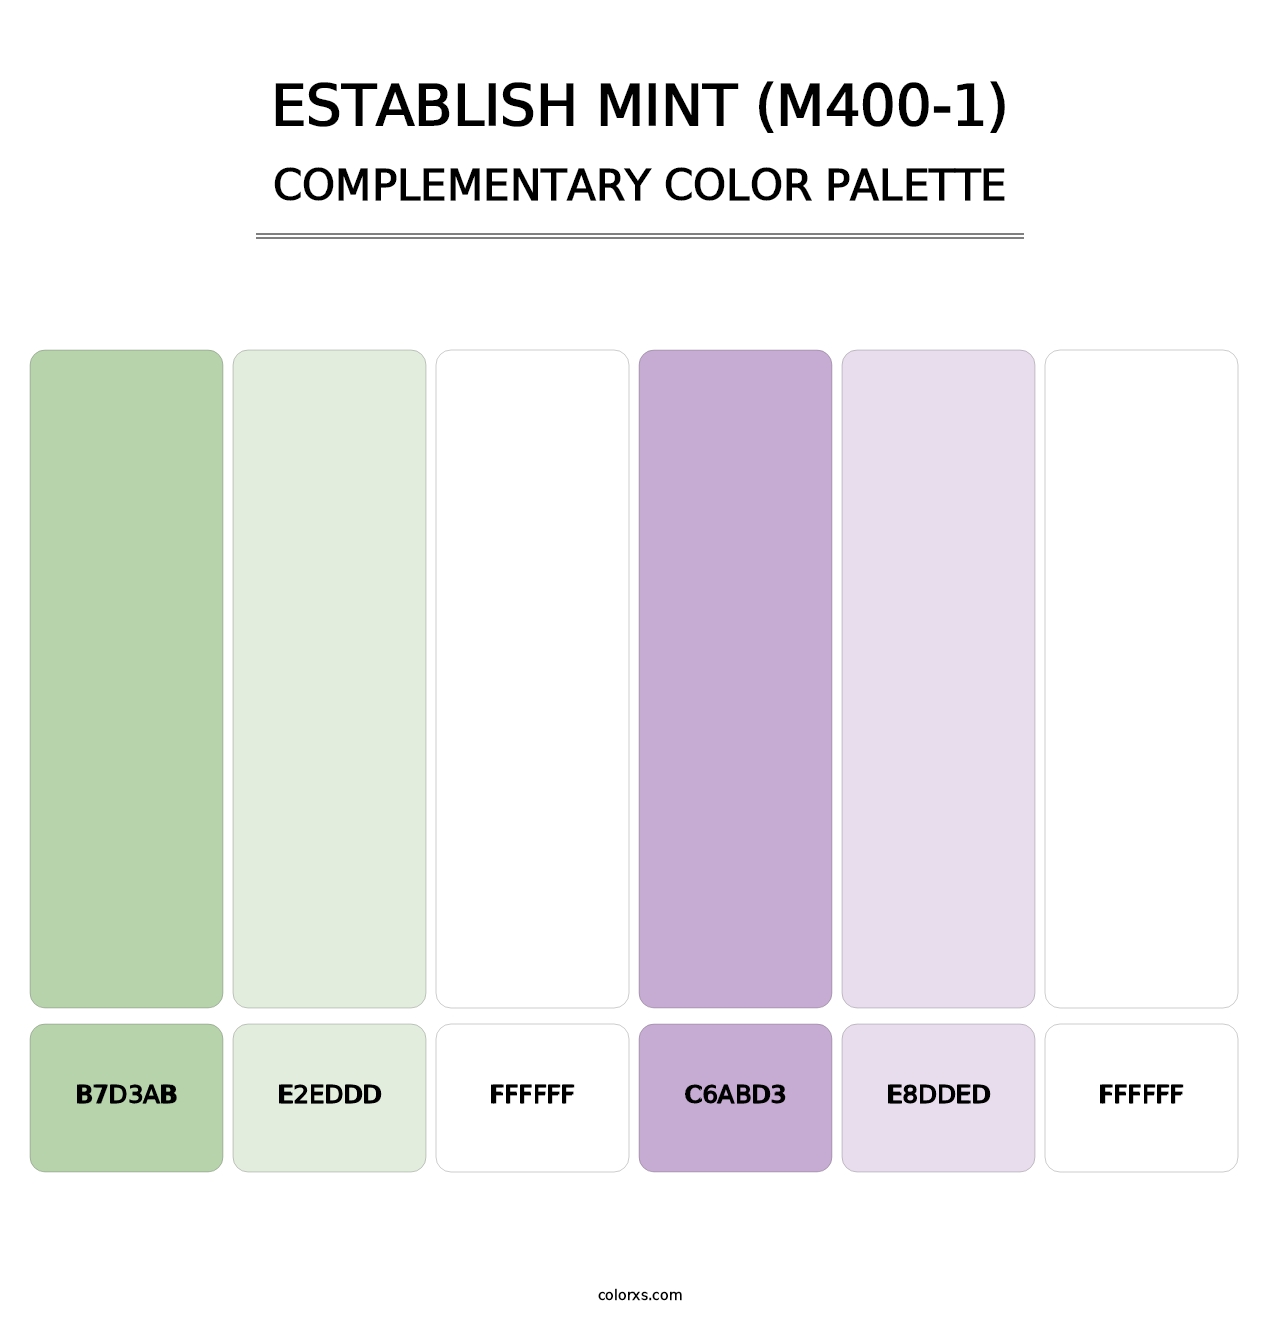 Establish Mint (M400-1) - Complementary Color Palette